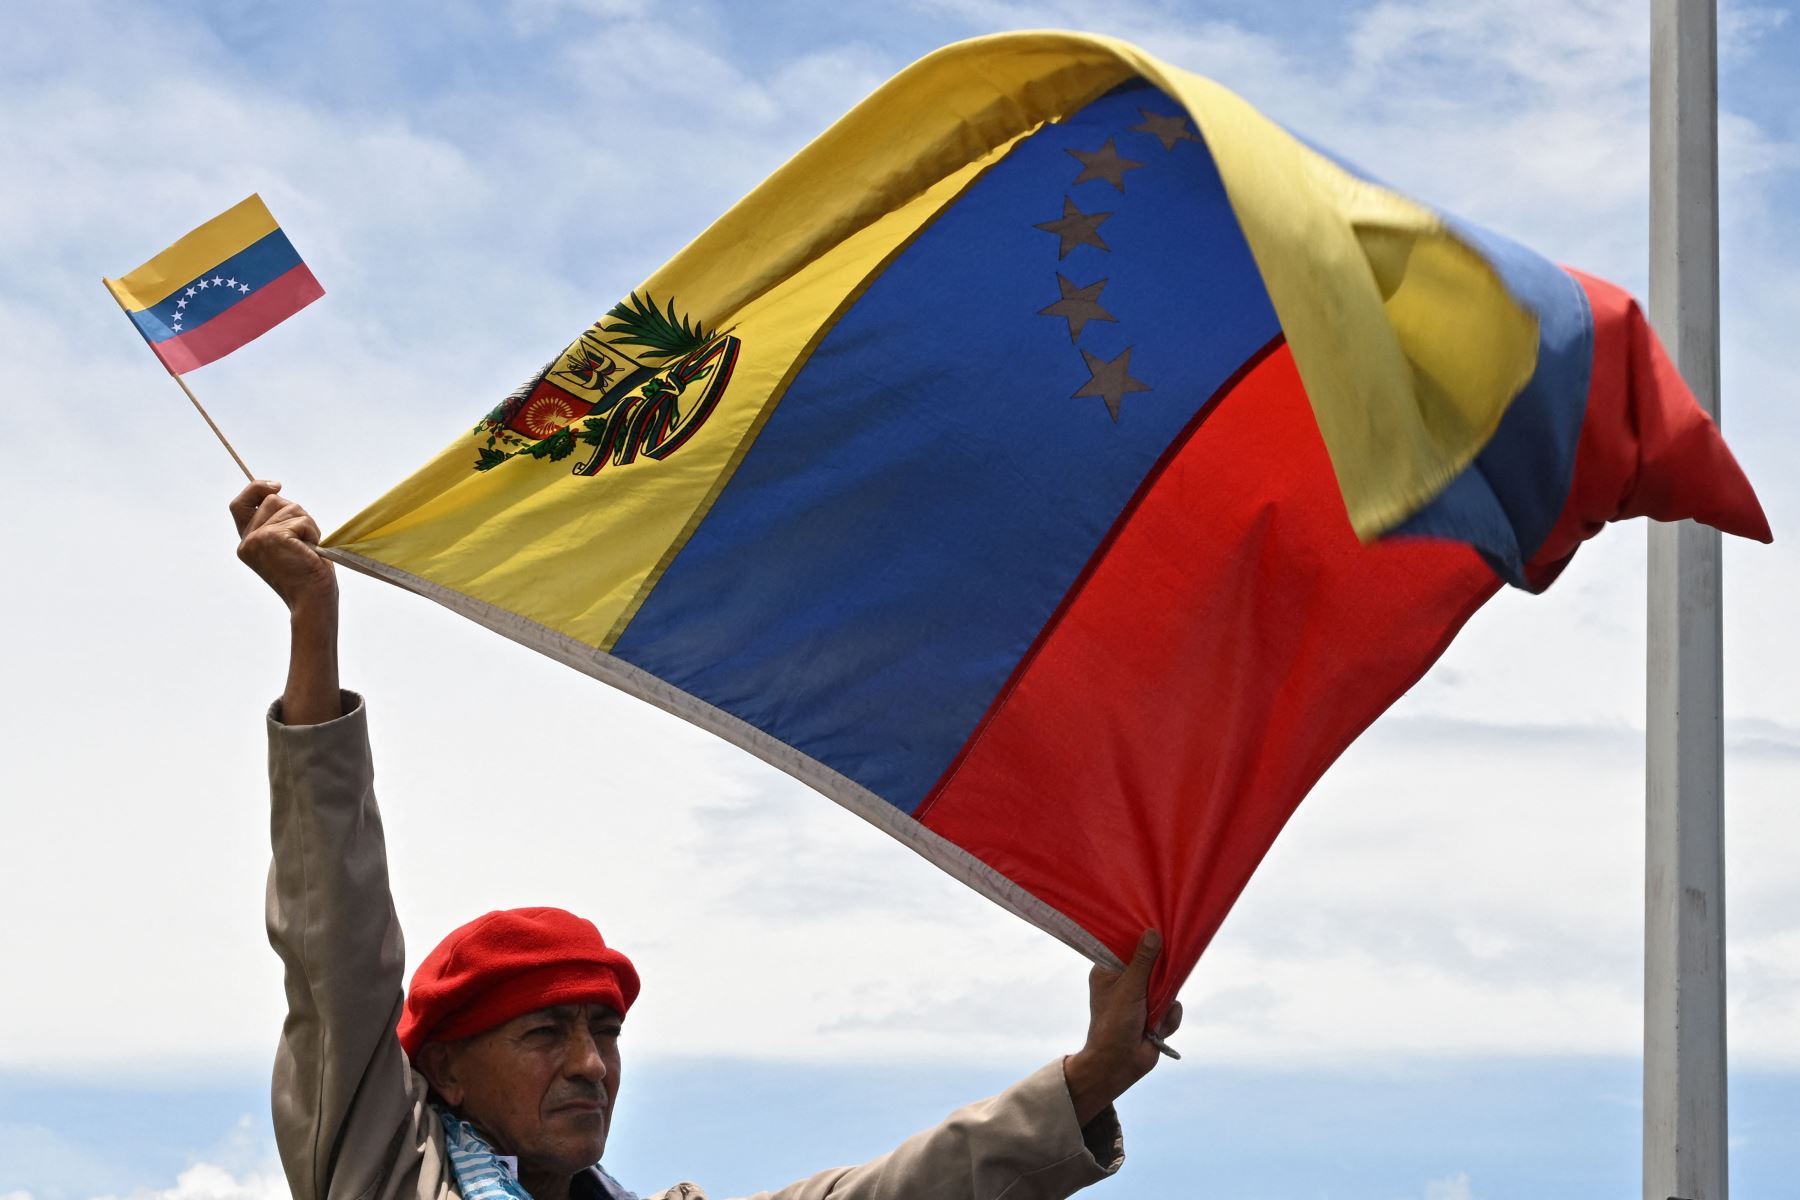 Un hombre ondea banderas venezolanas durante la ceremonia en la que se reabrió oficialmente la frontera terrestre entre Venezuela y Colombia después de estar completamente cerrada desde 2019, en el Puente Internacional Simón Bolívar.
Foto: AFP